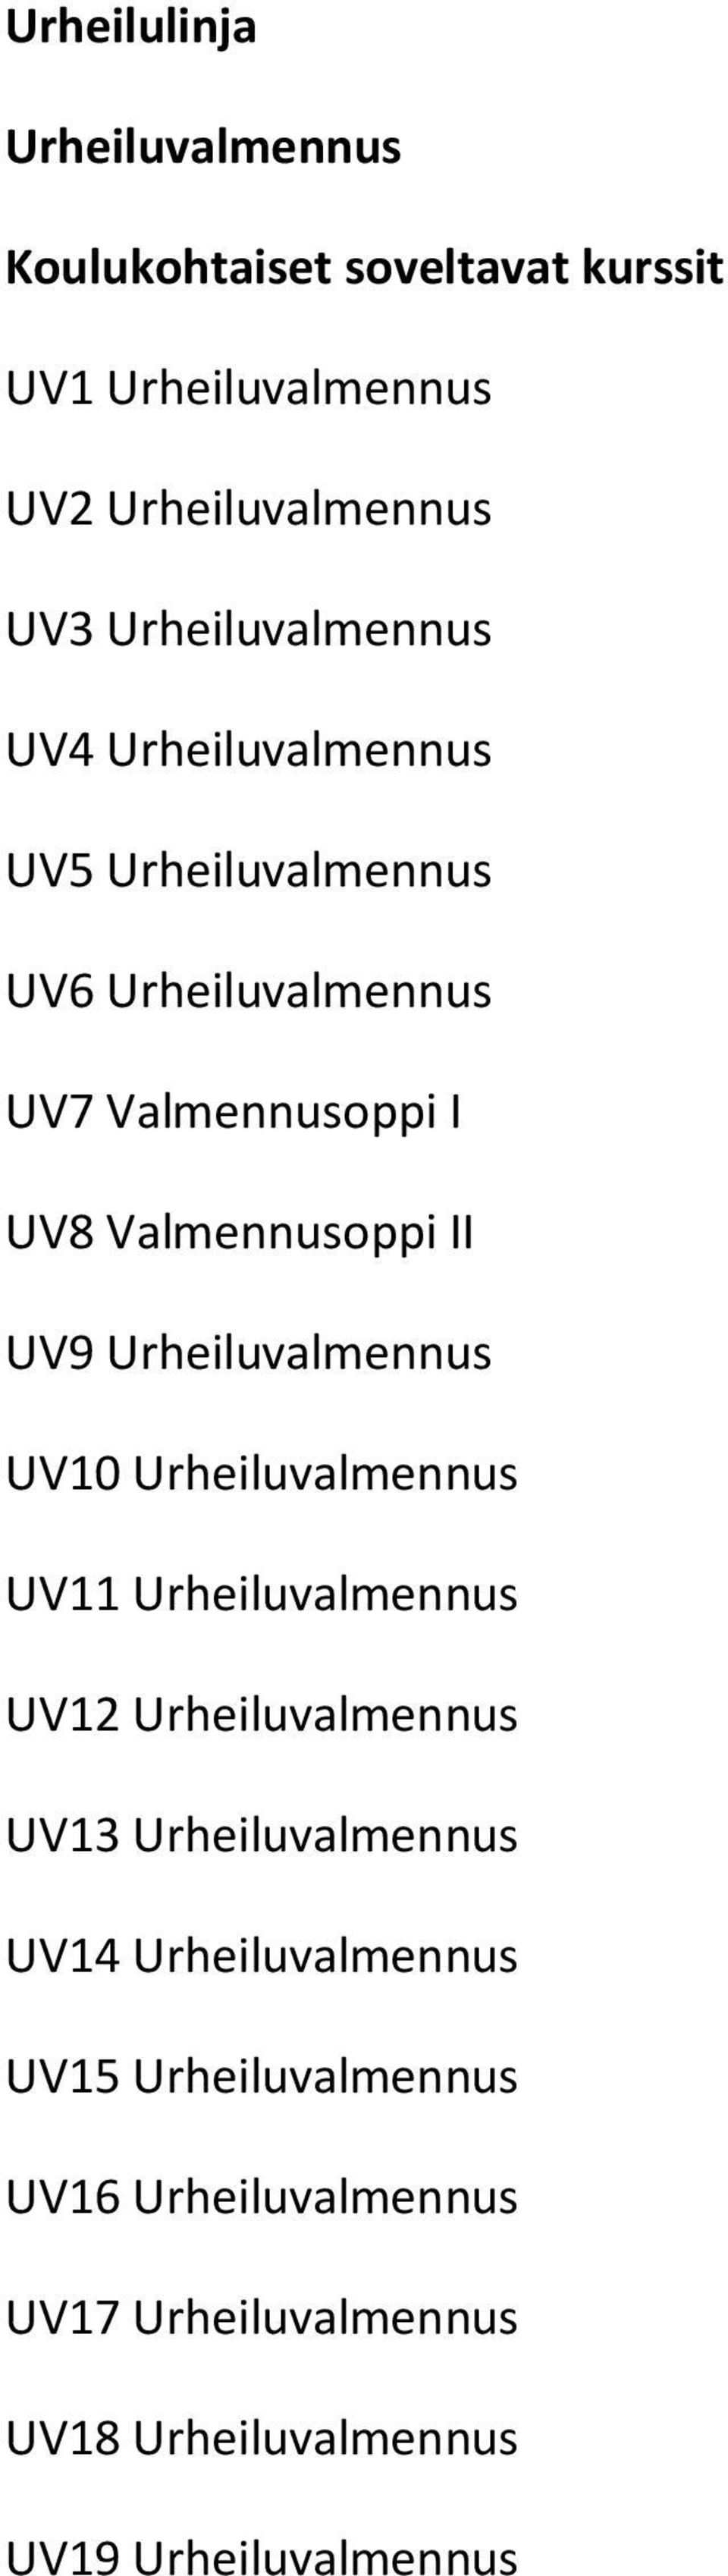 Urheiluvalmennus UV10 Urheiluvalmennus UV11 Urheiluvalmennus UV12 Urheiluvalmennus UV13 Urheiluvalmennus UV14